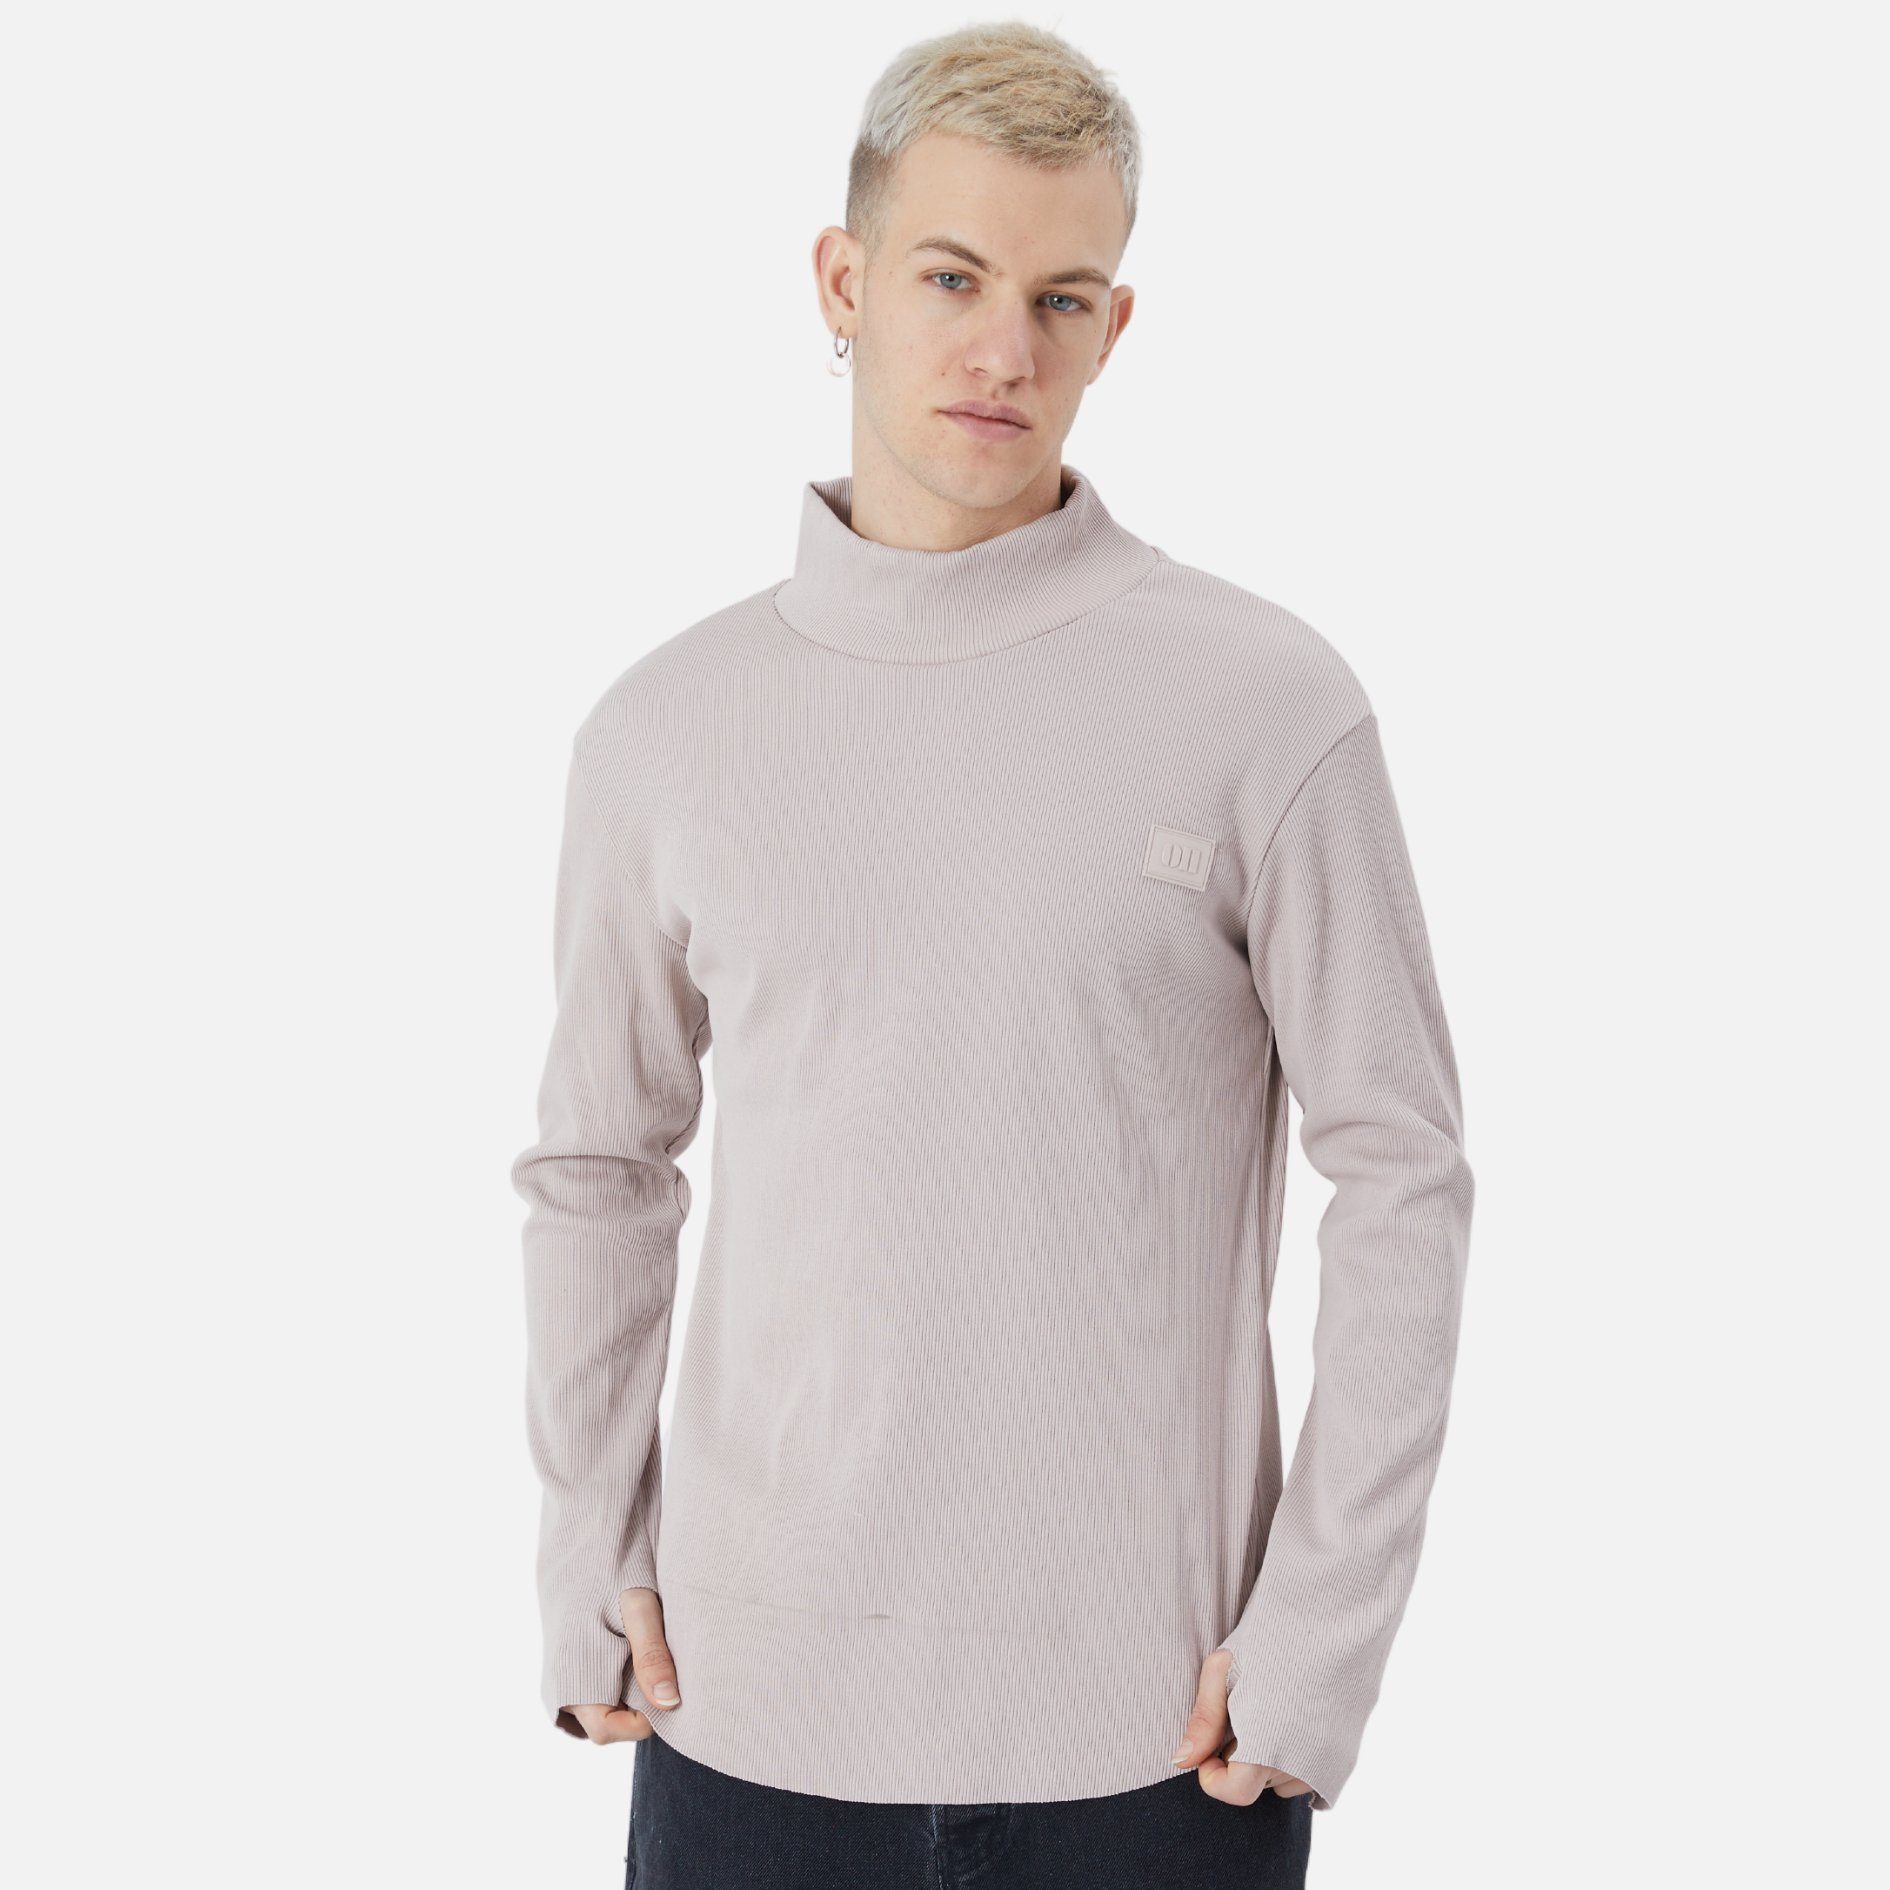 COFI Casuals Sweatshirt Herren Rundhals Fit Beige Sweatshirt Regular Pullover